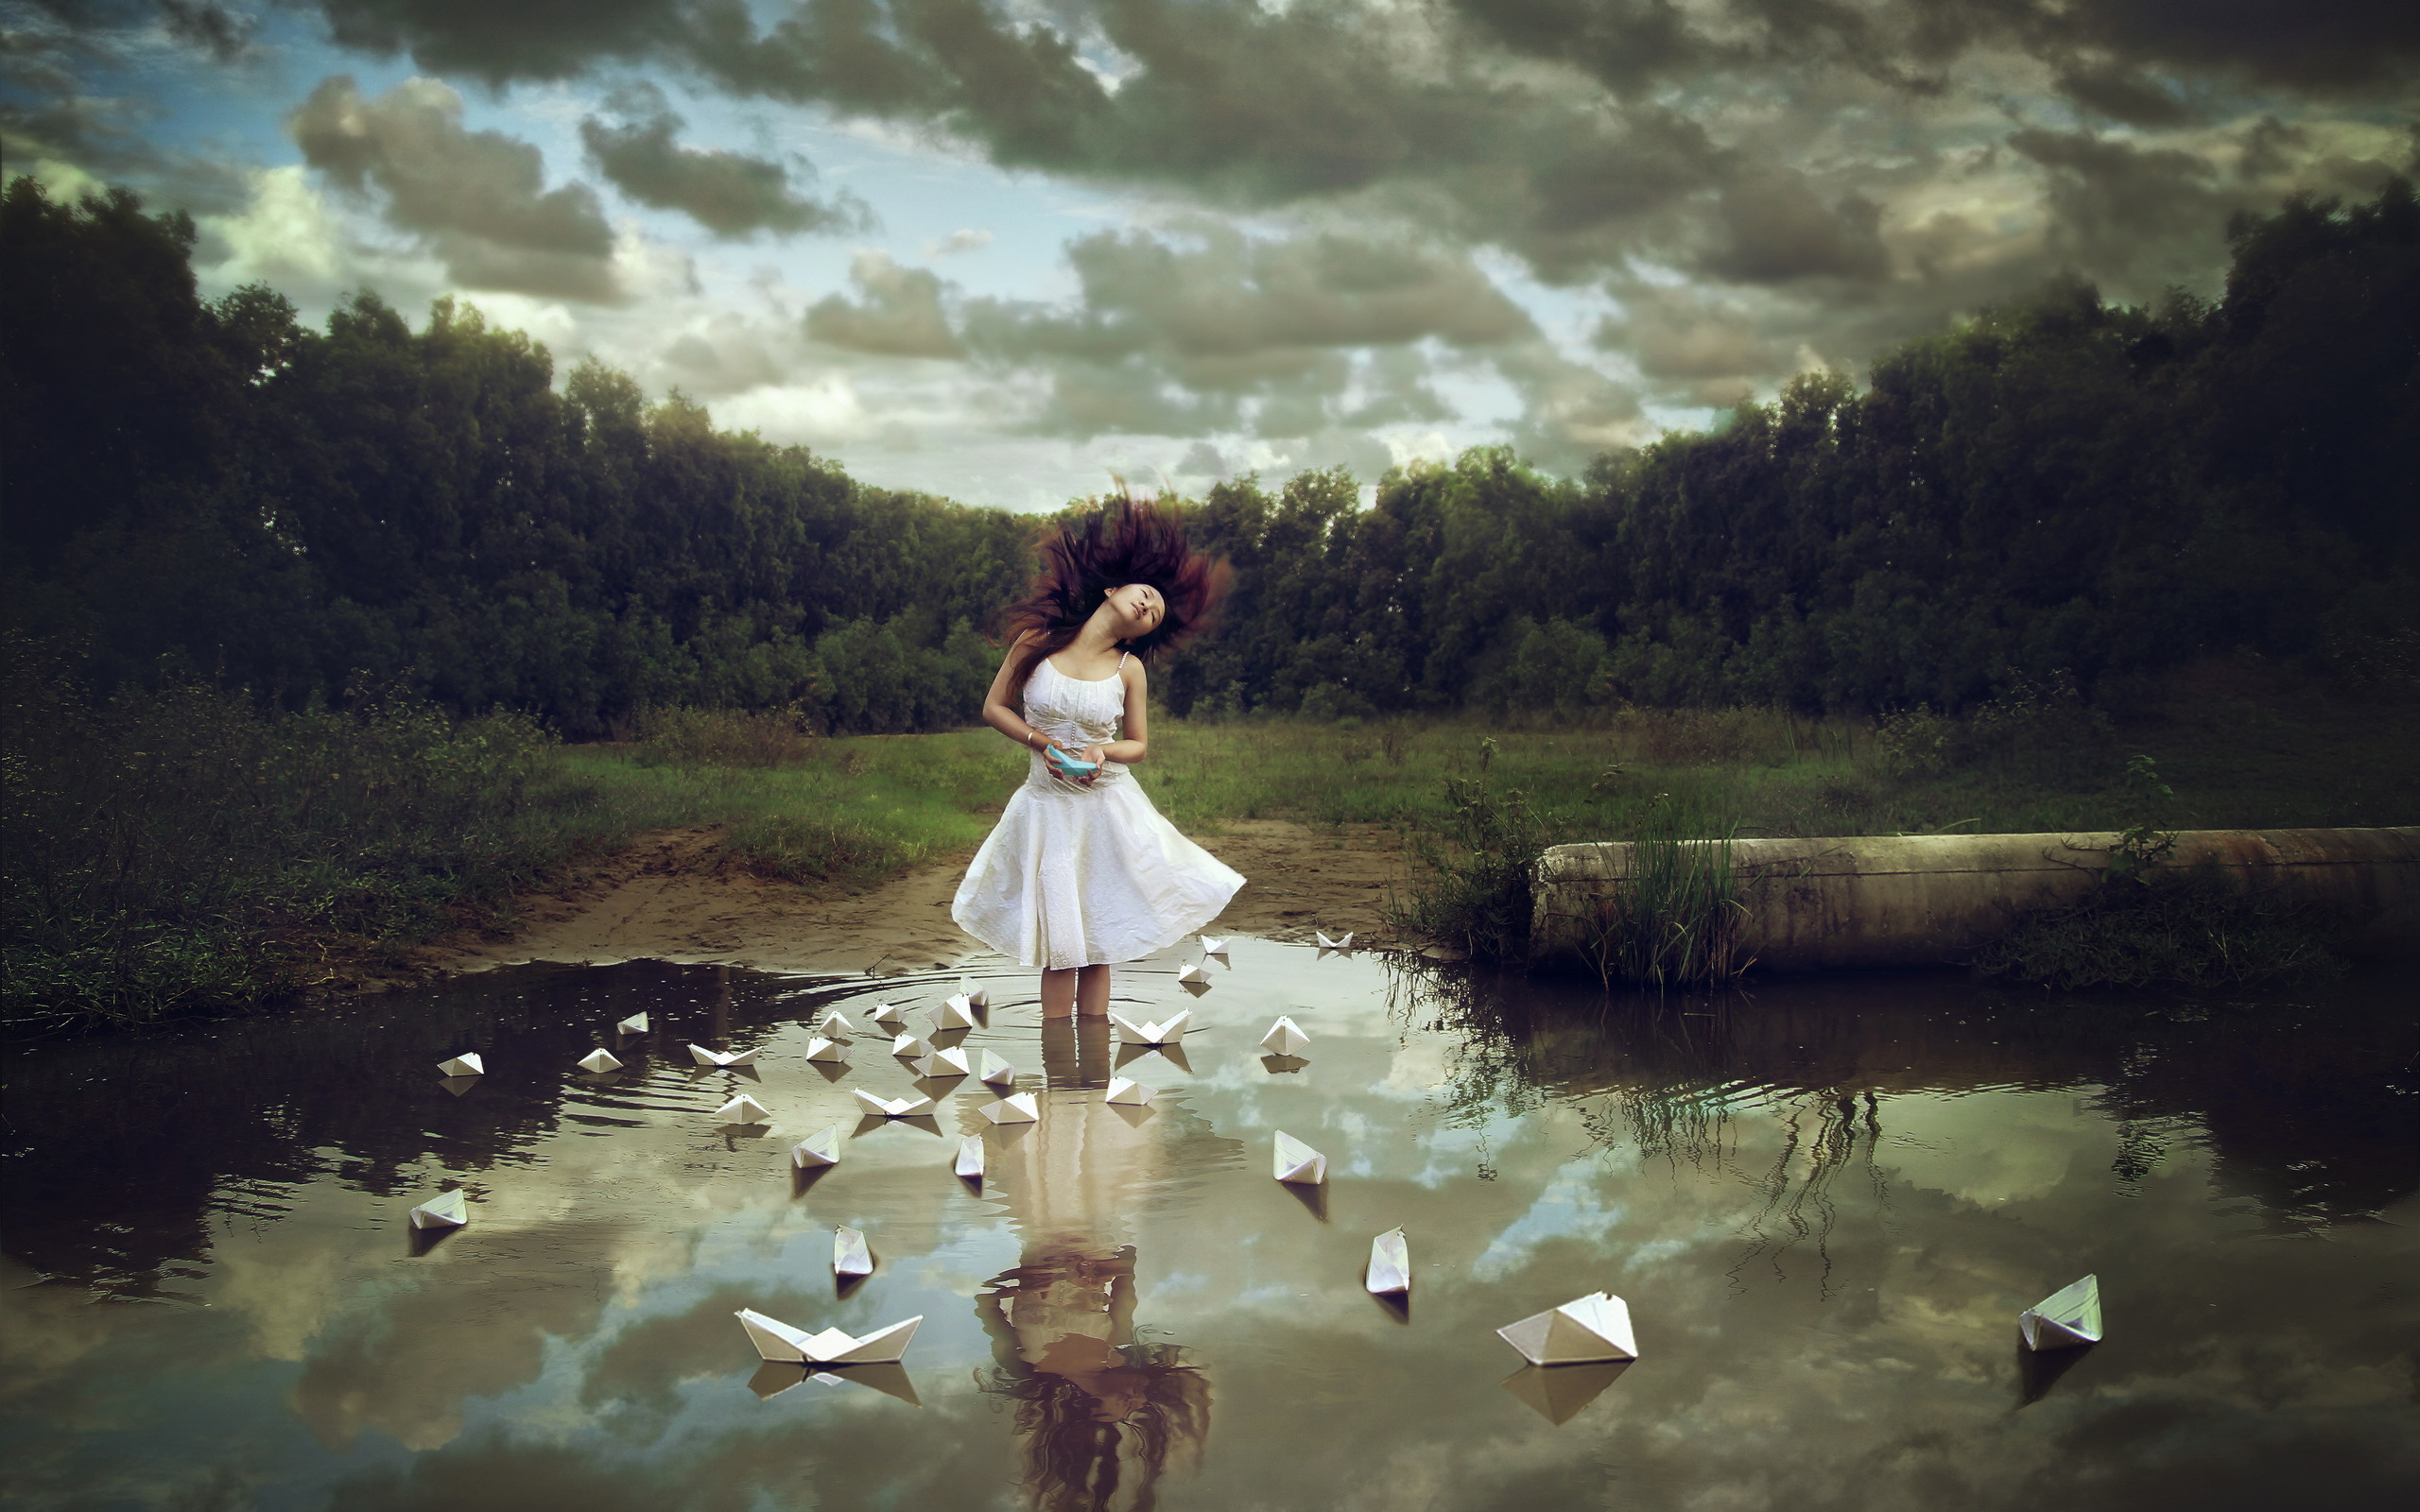 Девушка - азиатка стоит в воде на фоне леса, в которой плавают бумажные кораблики